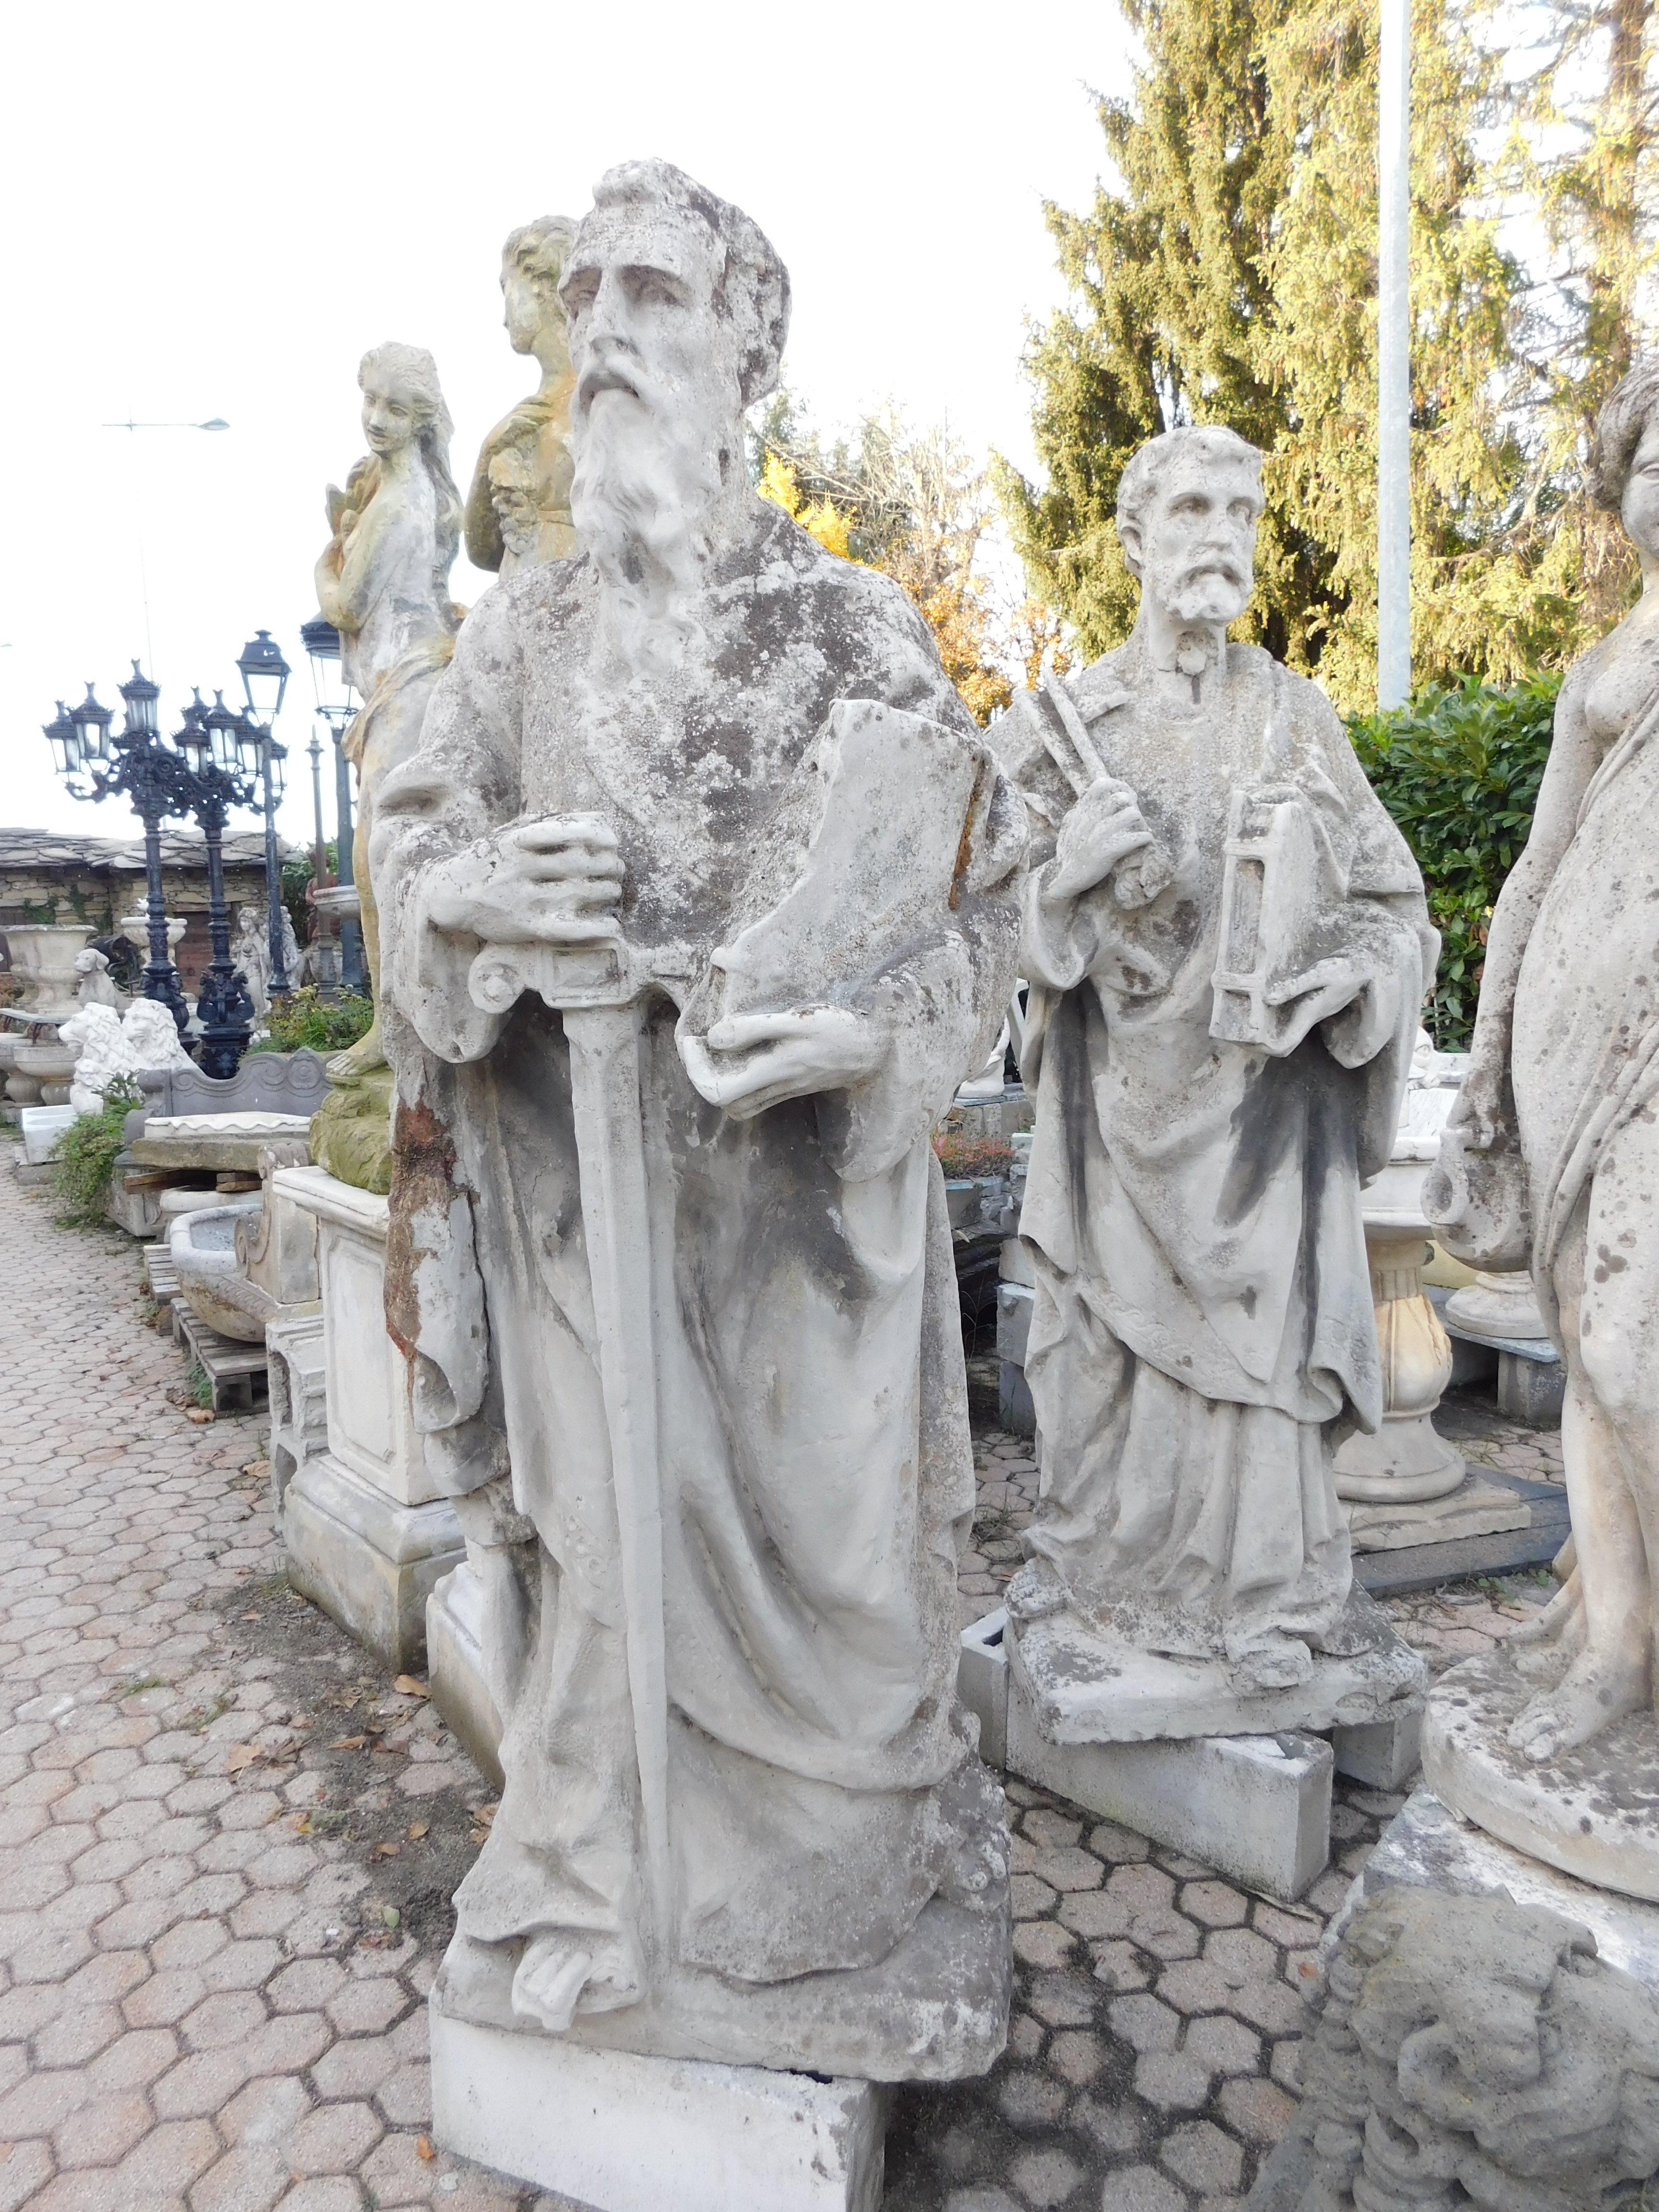 Antikes Statuenpaar für den Außenbereich oder den Garten, aus Beton, Statuen des Heiligen Petrus und des Heiligen Paulus, hergestellt in Italien zu Beginn des 20. Jahrhunderts, sehr schön und malerisch, geeignet für drinnen und draußen.
Sie messen